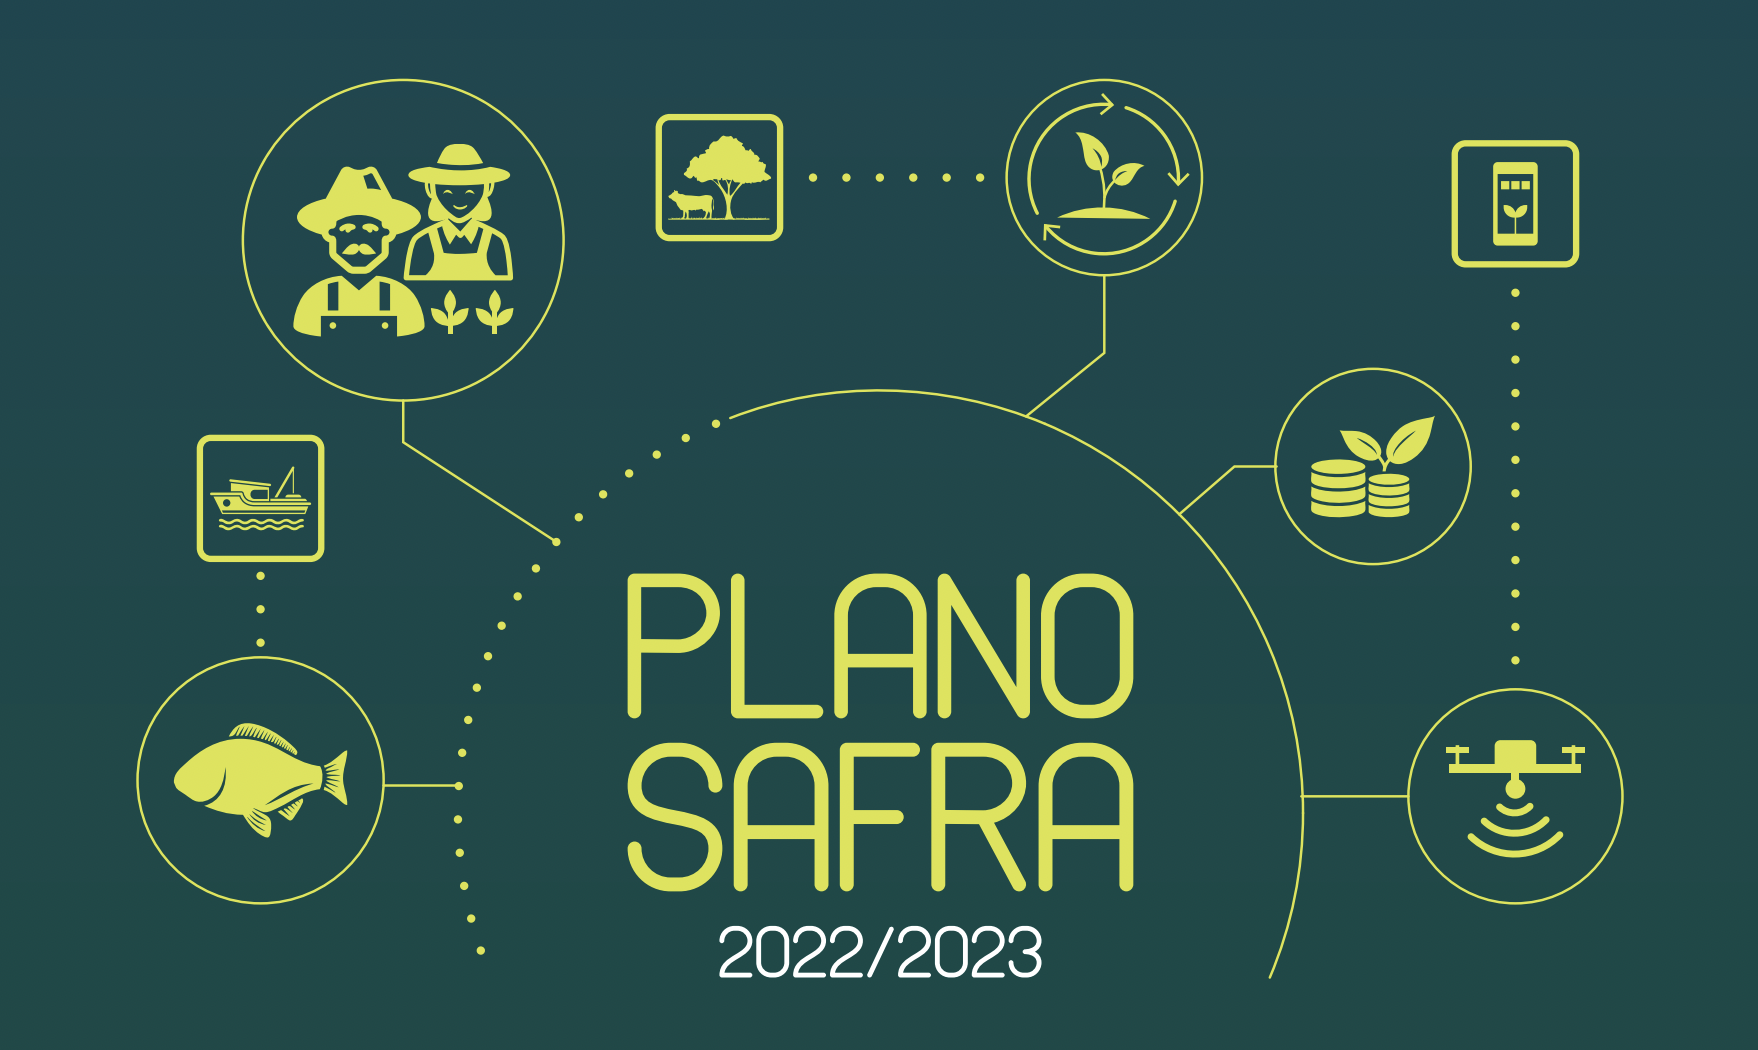 Veja os novos valores turbinados do Plano Safra 2022/23